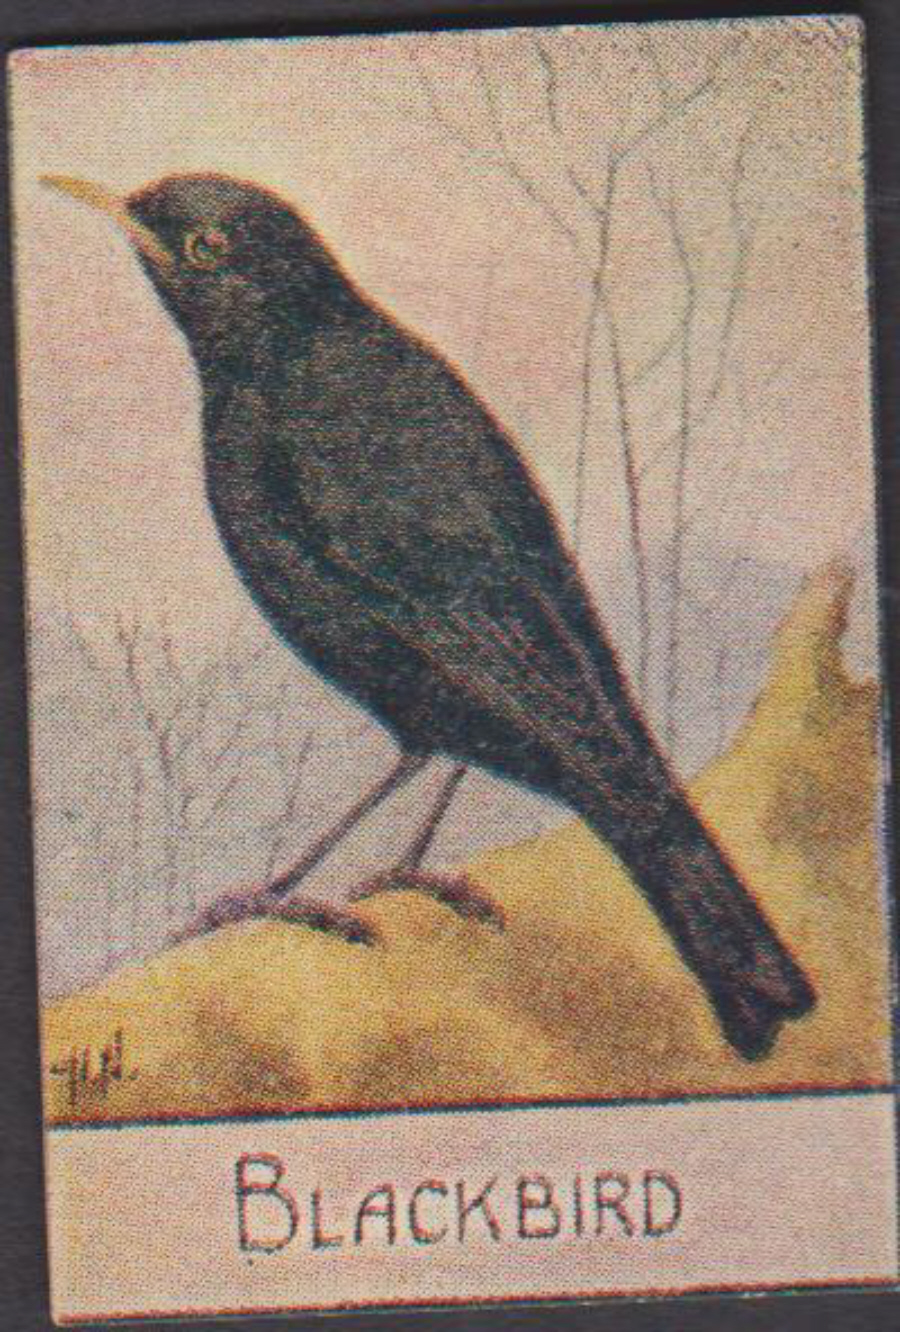 Spratt's British Bird Series Numbered No 60 Blackbird